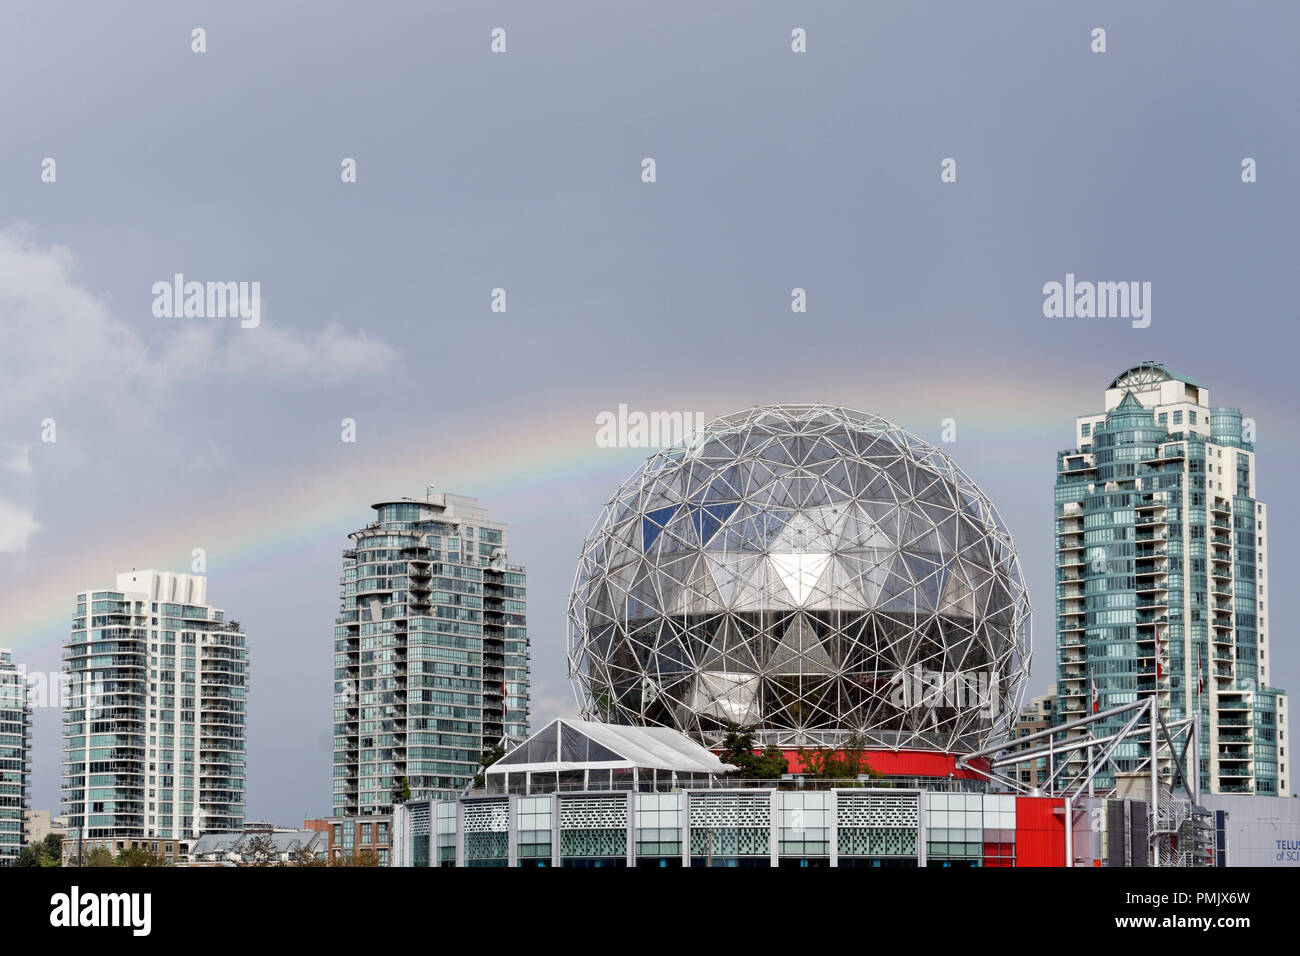 Arco iris sobre Telus World of Science, cúpula geodésica y edificios de apartamentos de gran altura, Vancouver, Columbia Británica, Canadá Foto de stock